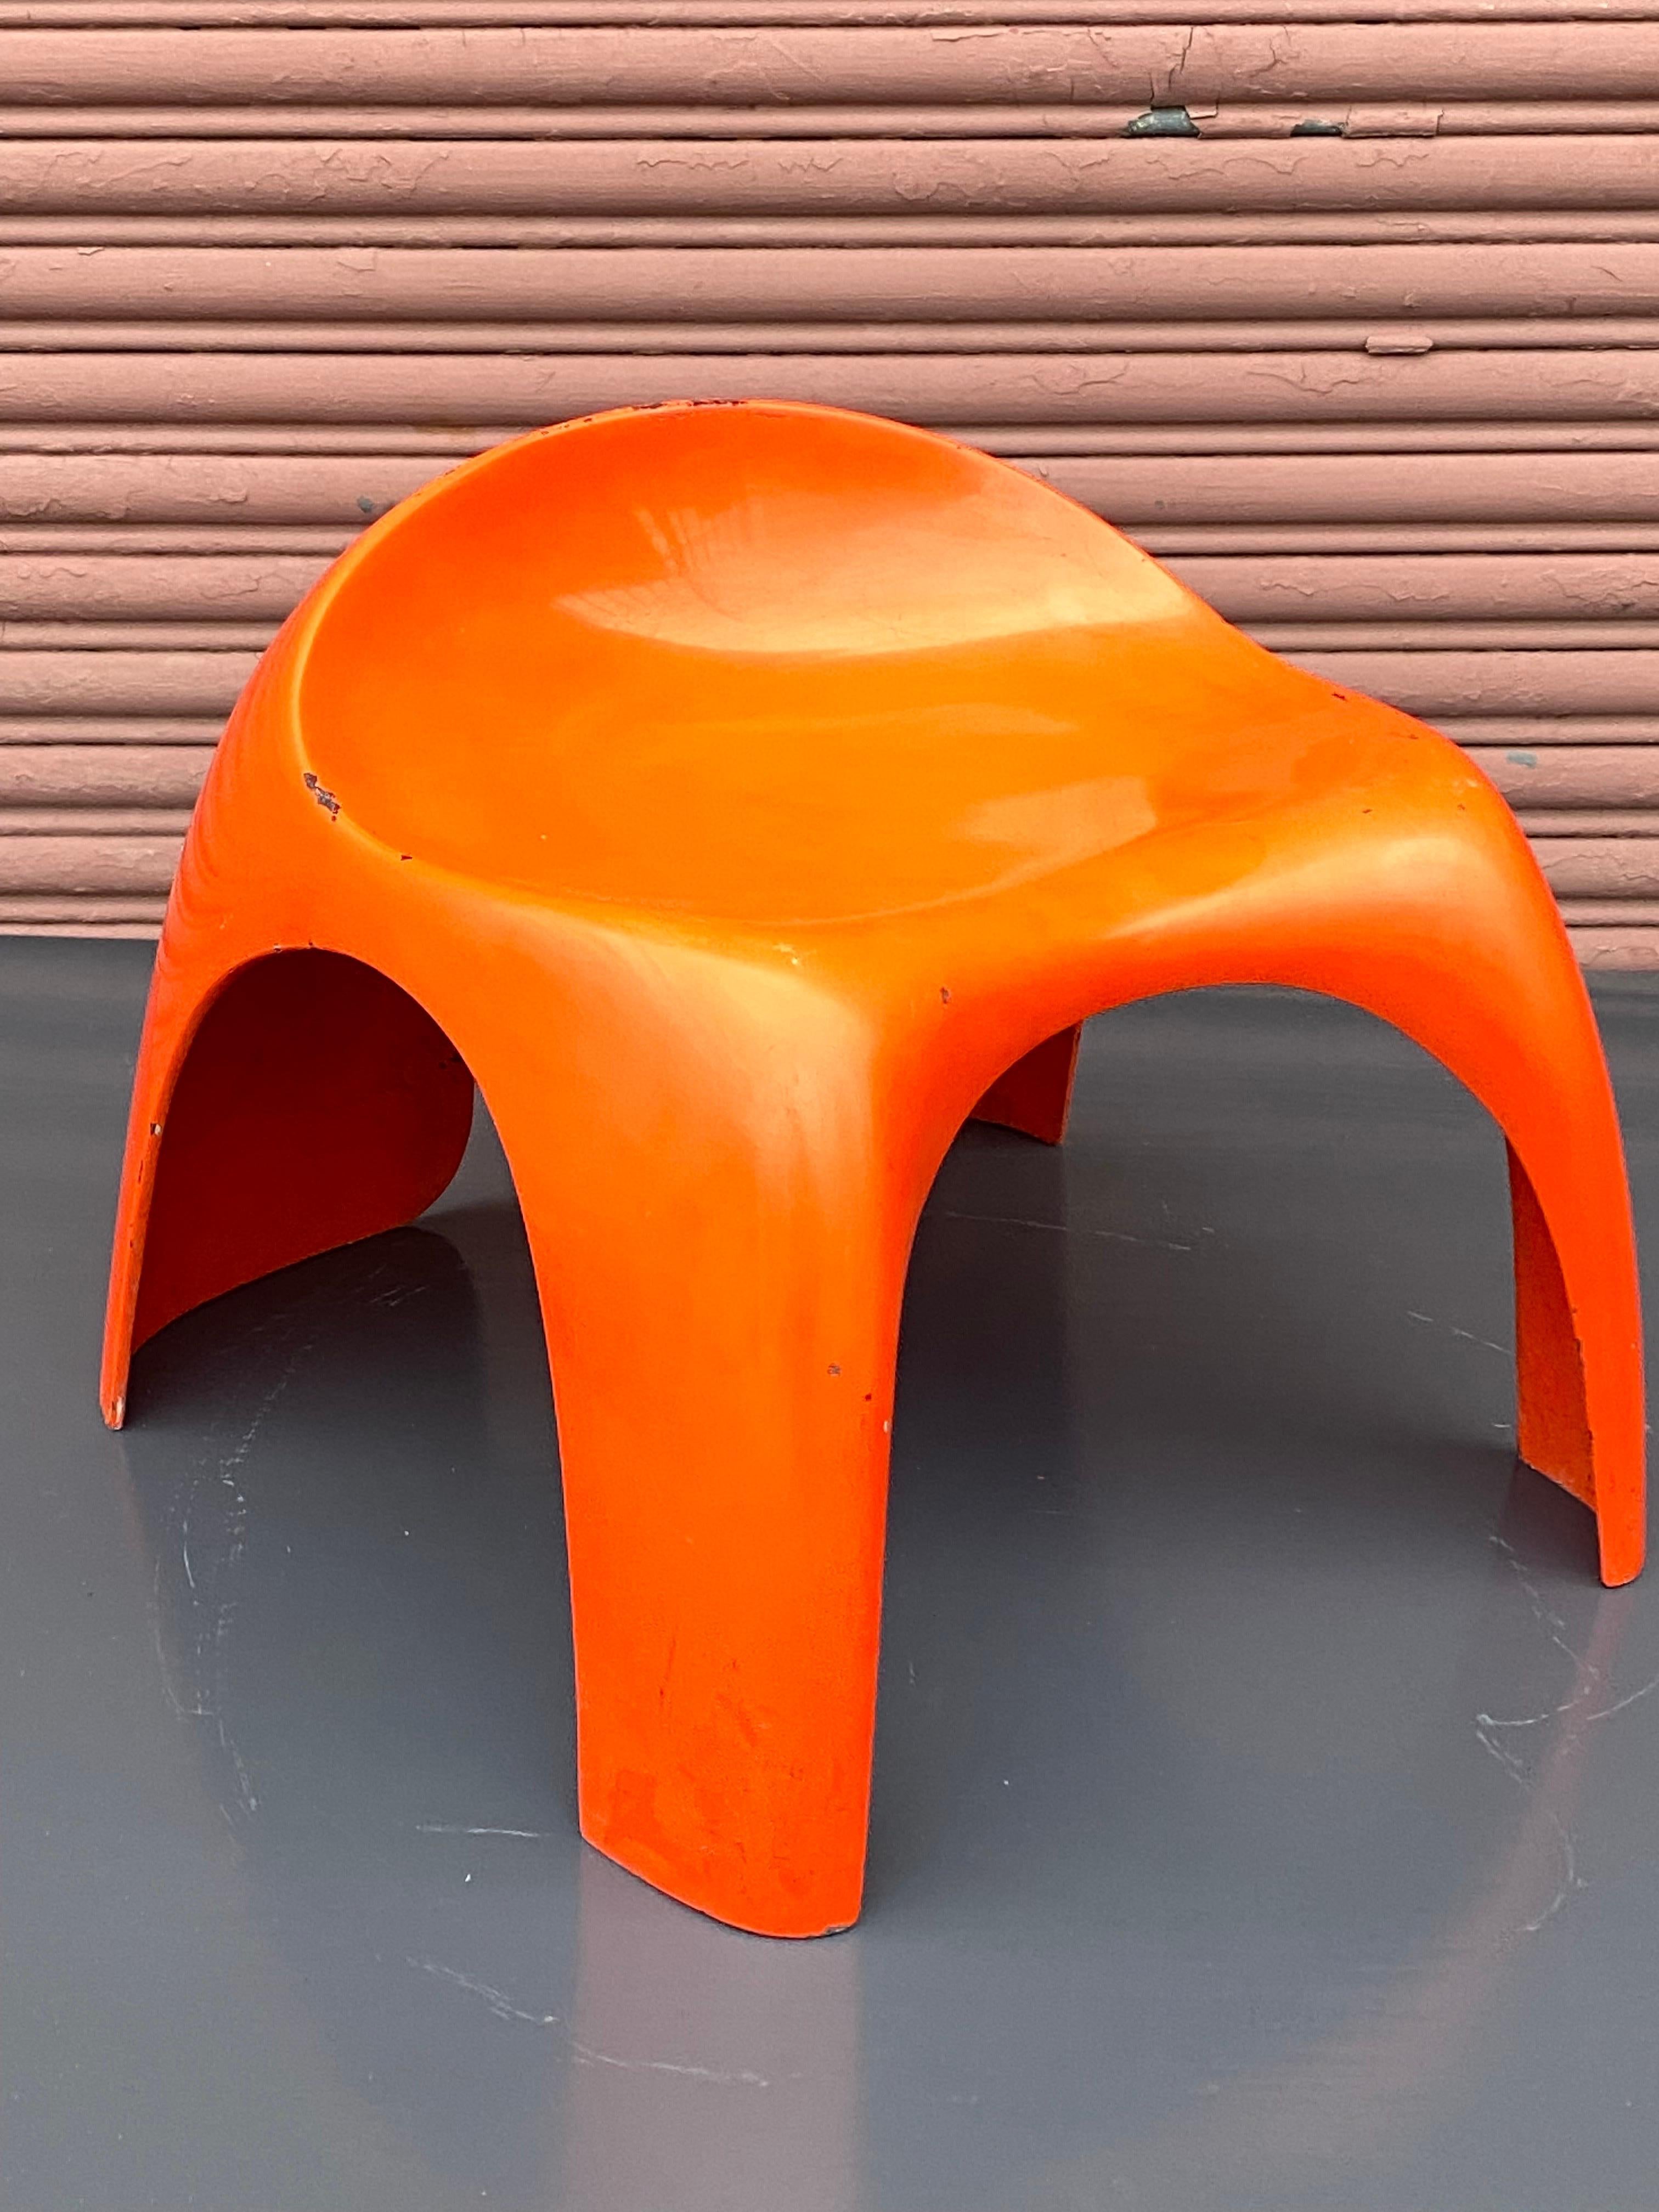 Stacy Dukes Prototype Fiberglass stool from California Design 10/ 1968  For Sale 2